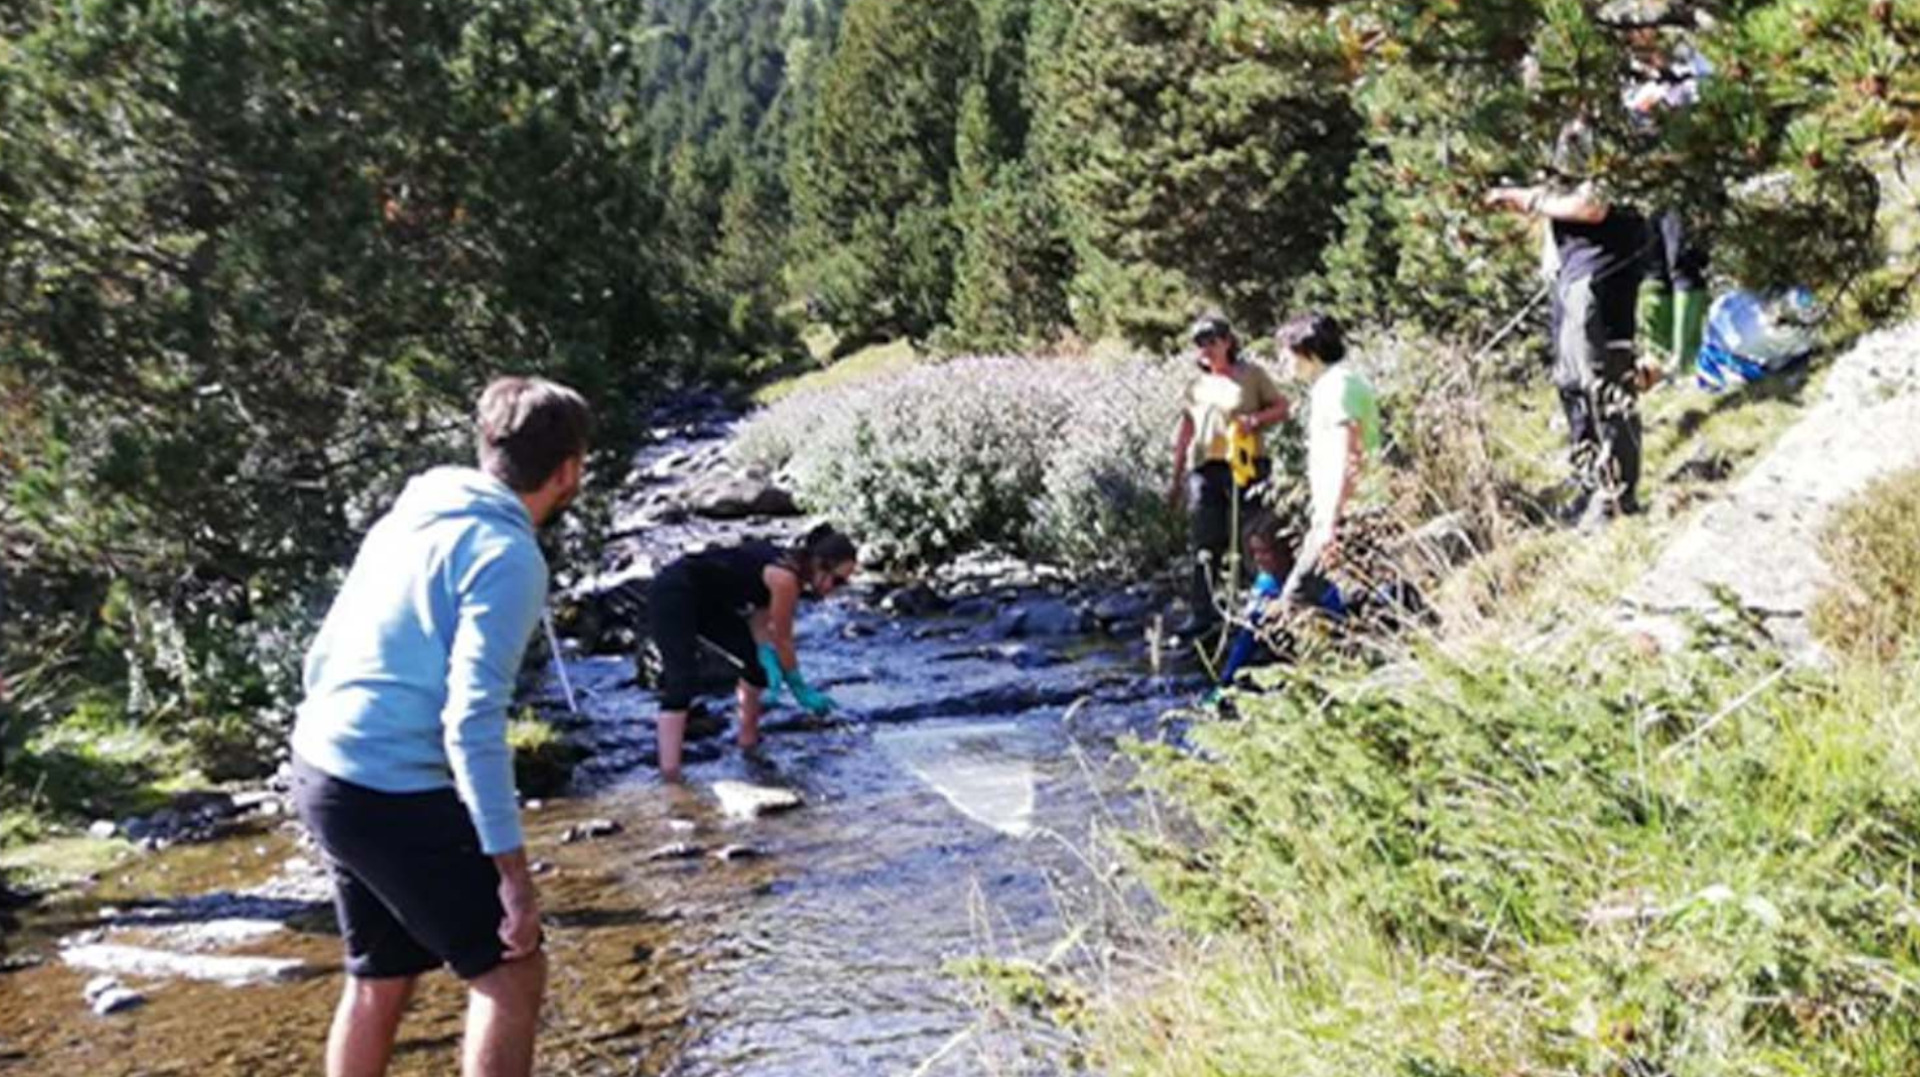 Contribució de les entitats excursionistes a la reducció de la contaminació per plàstics als ecosistemes de muntanya